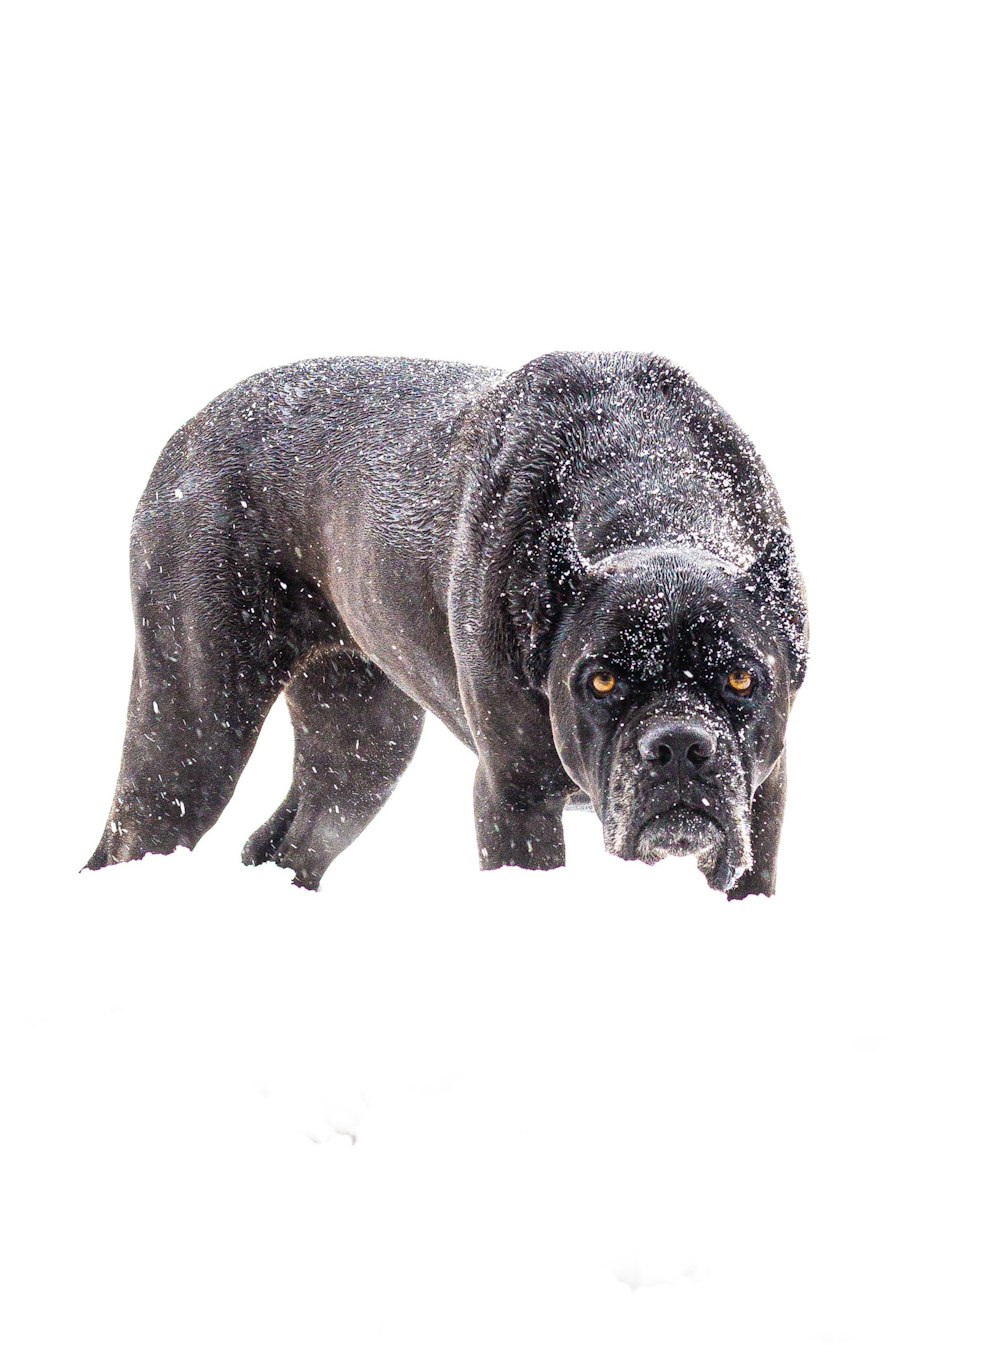 black short coated dog on white snow